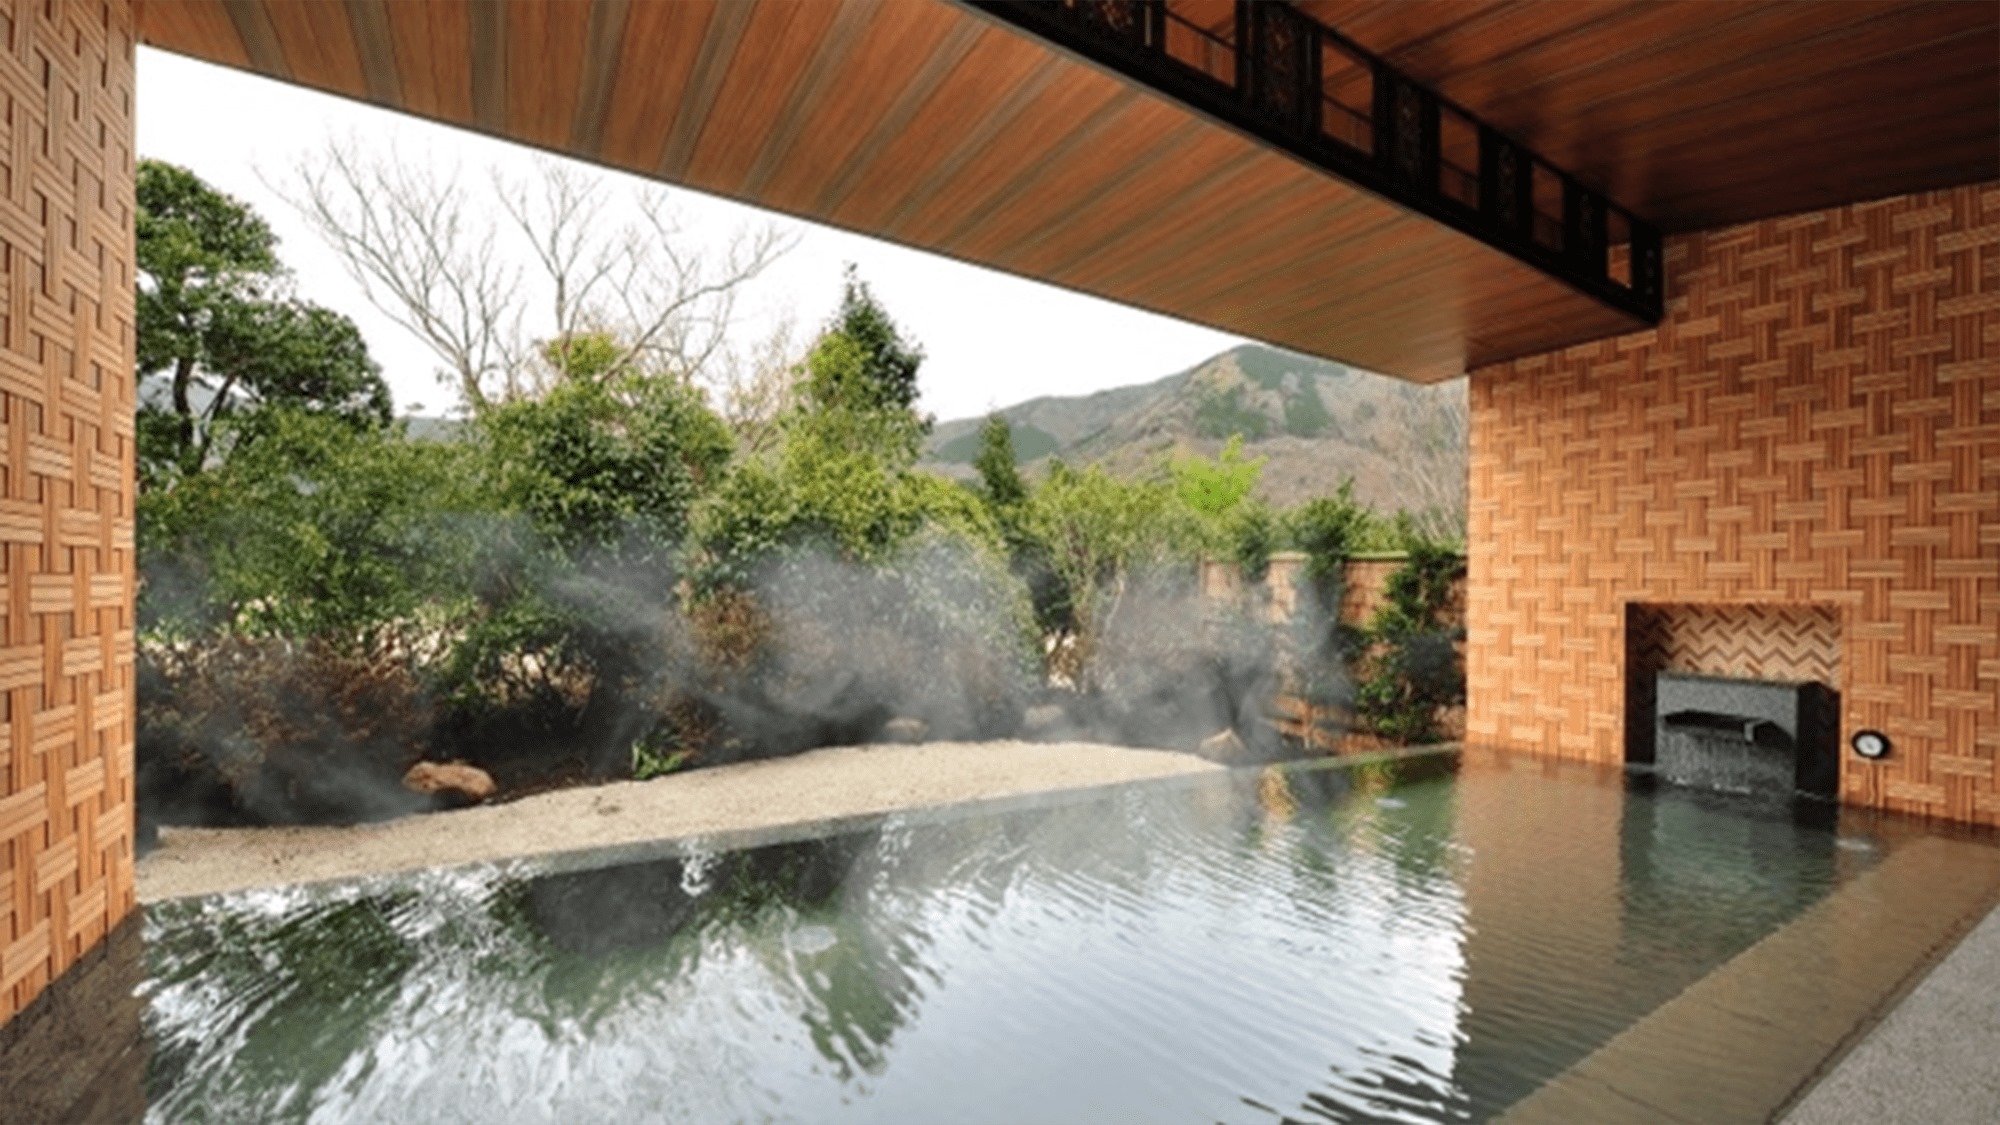 【露天風呂・昼】雄大な箱根外輪山の眺望が楽しめ、箱根寄木細工をモチーフとした壁面が特徴的です。